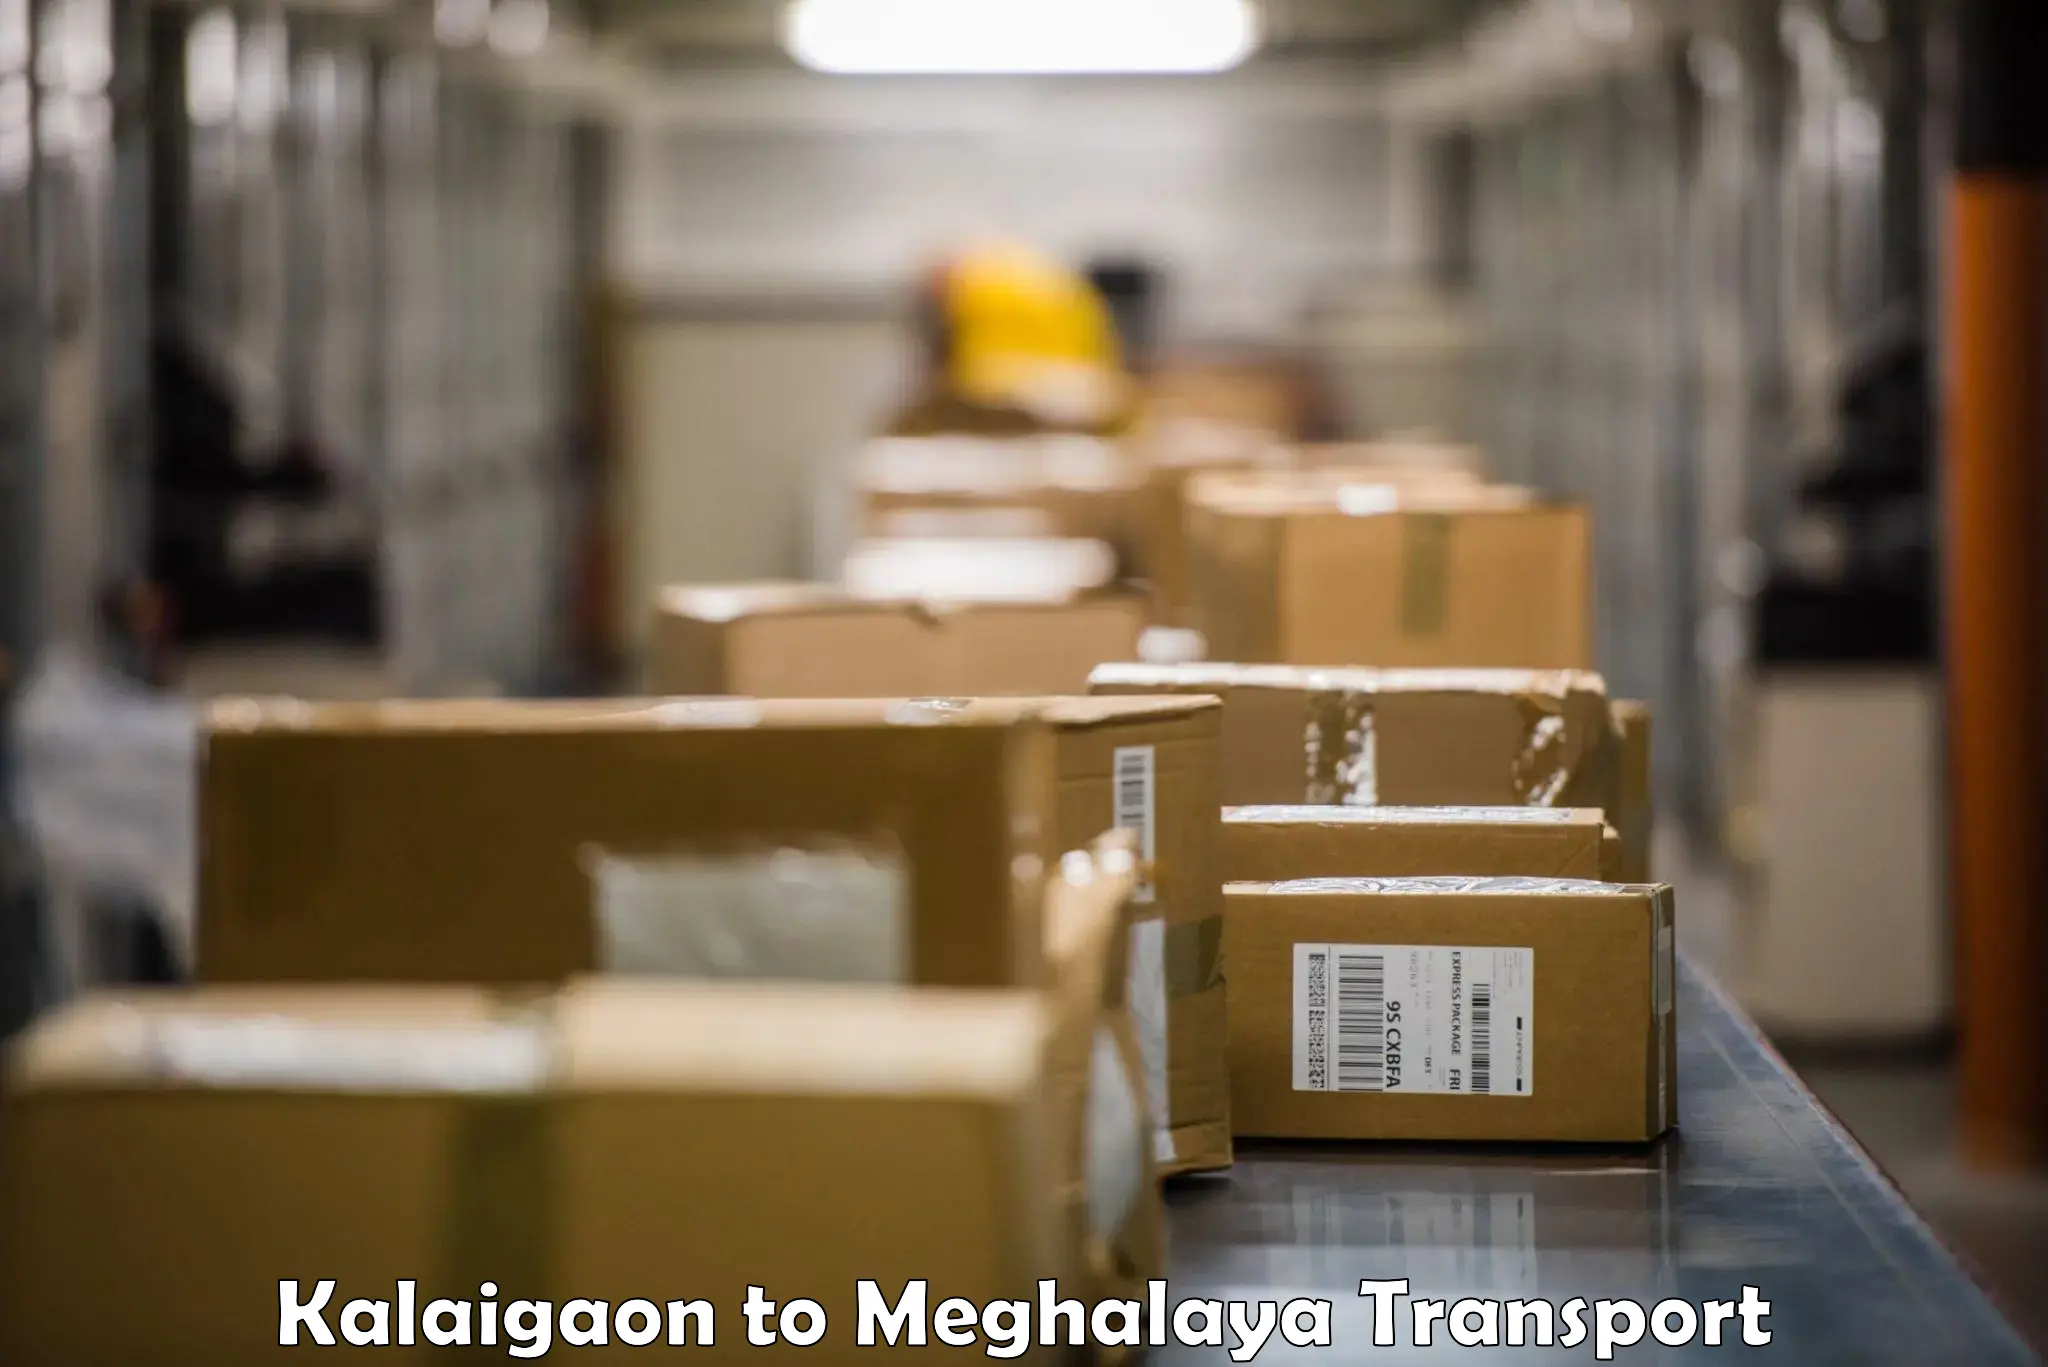 Container transport service Kalaigaon to Meghalaya